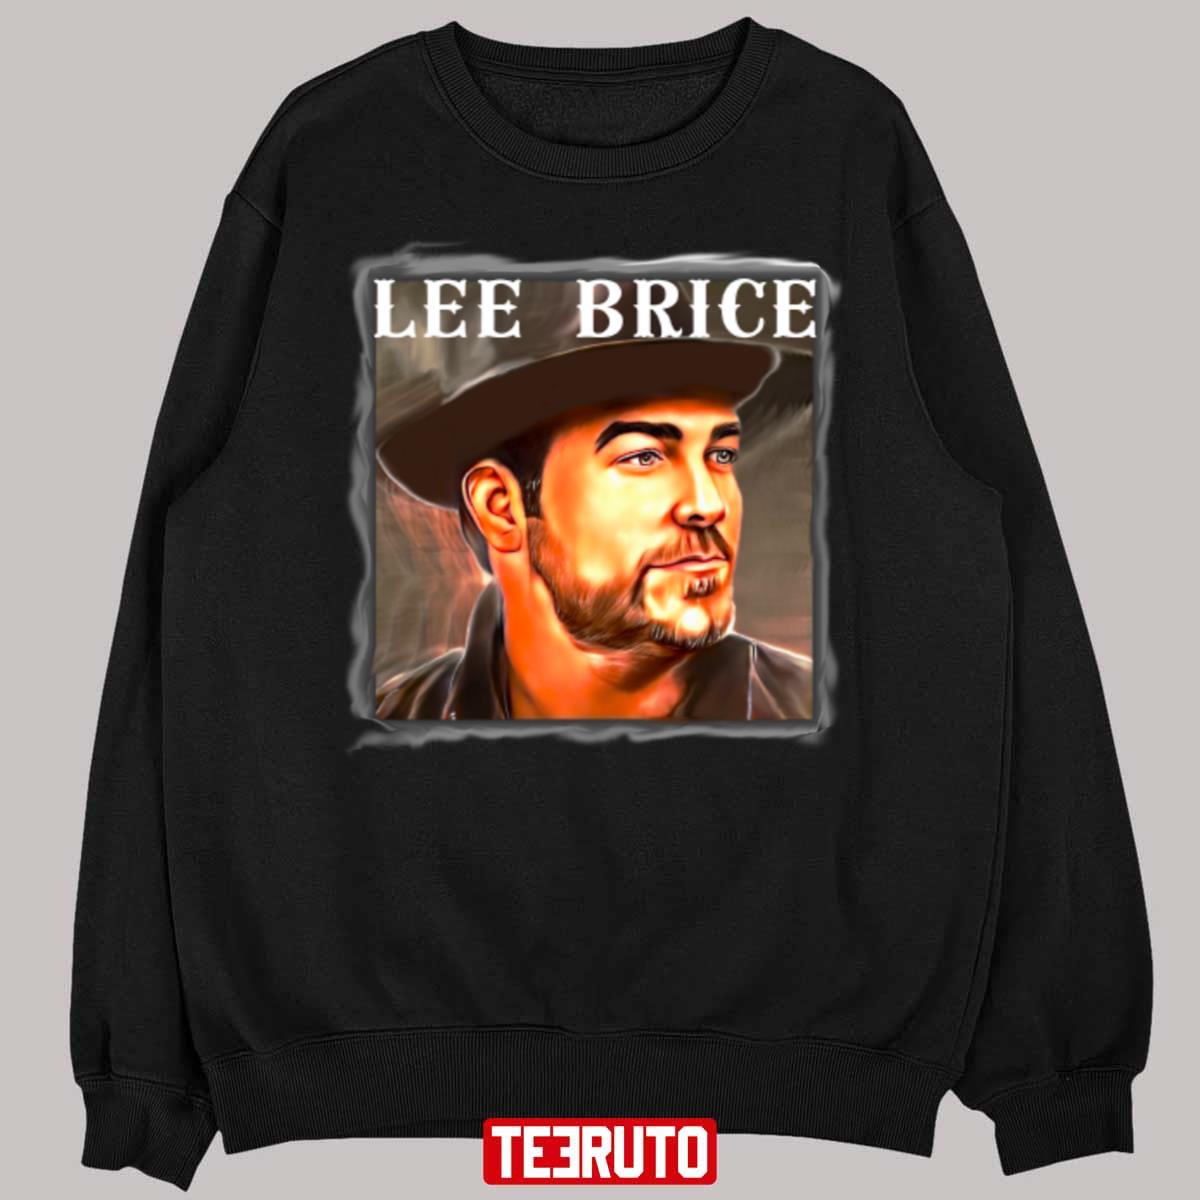 Vintage Portrait Of Lee Brice Unisex T-Shirt